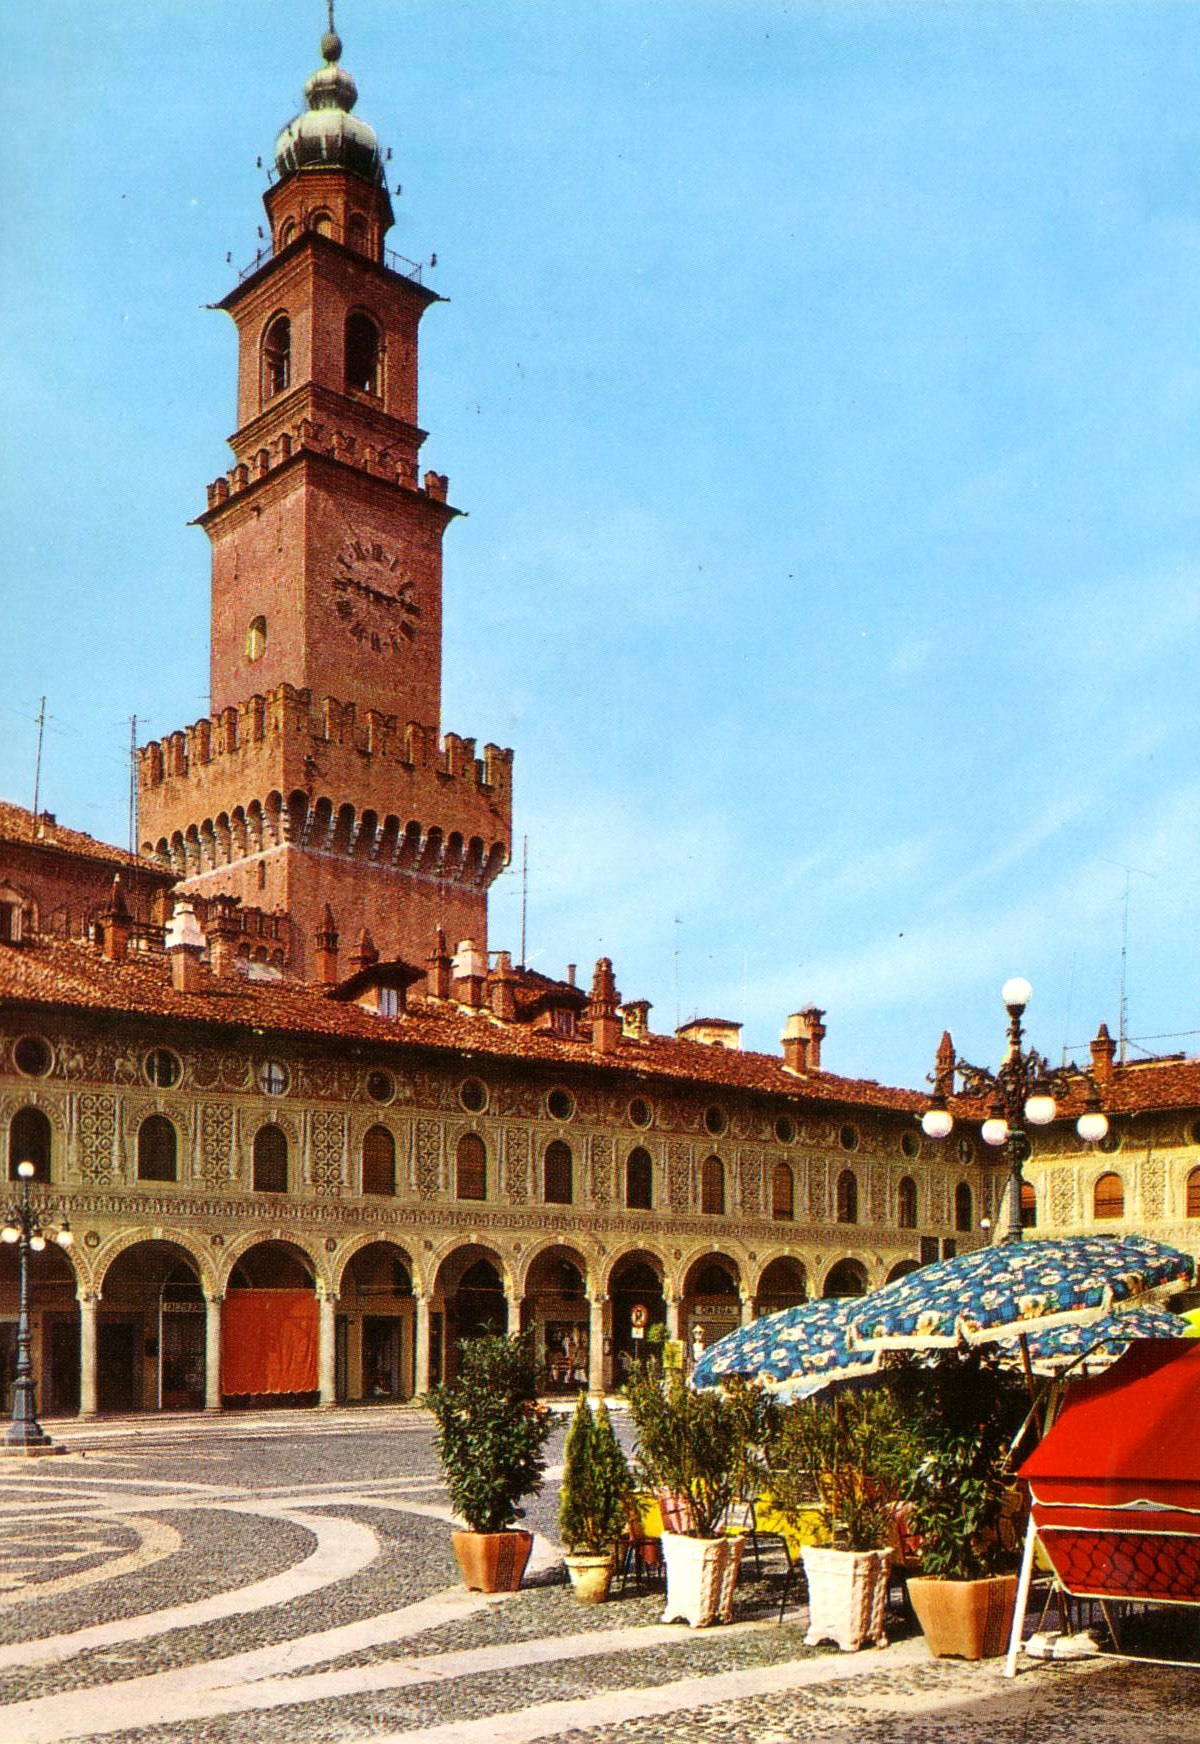 2-Particolare-della-piazza-ducale-fatta-costruire-nel-1494-da-Ludovico-il-Moro